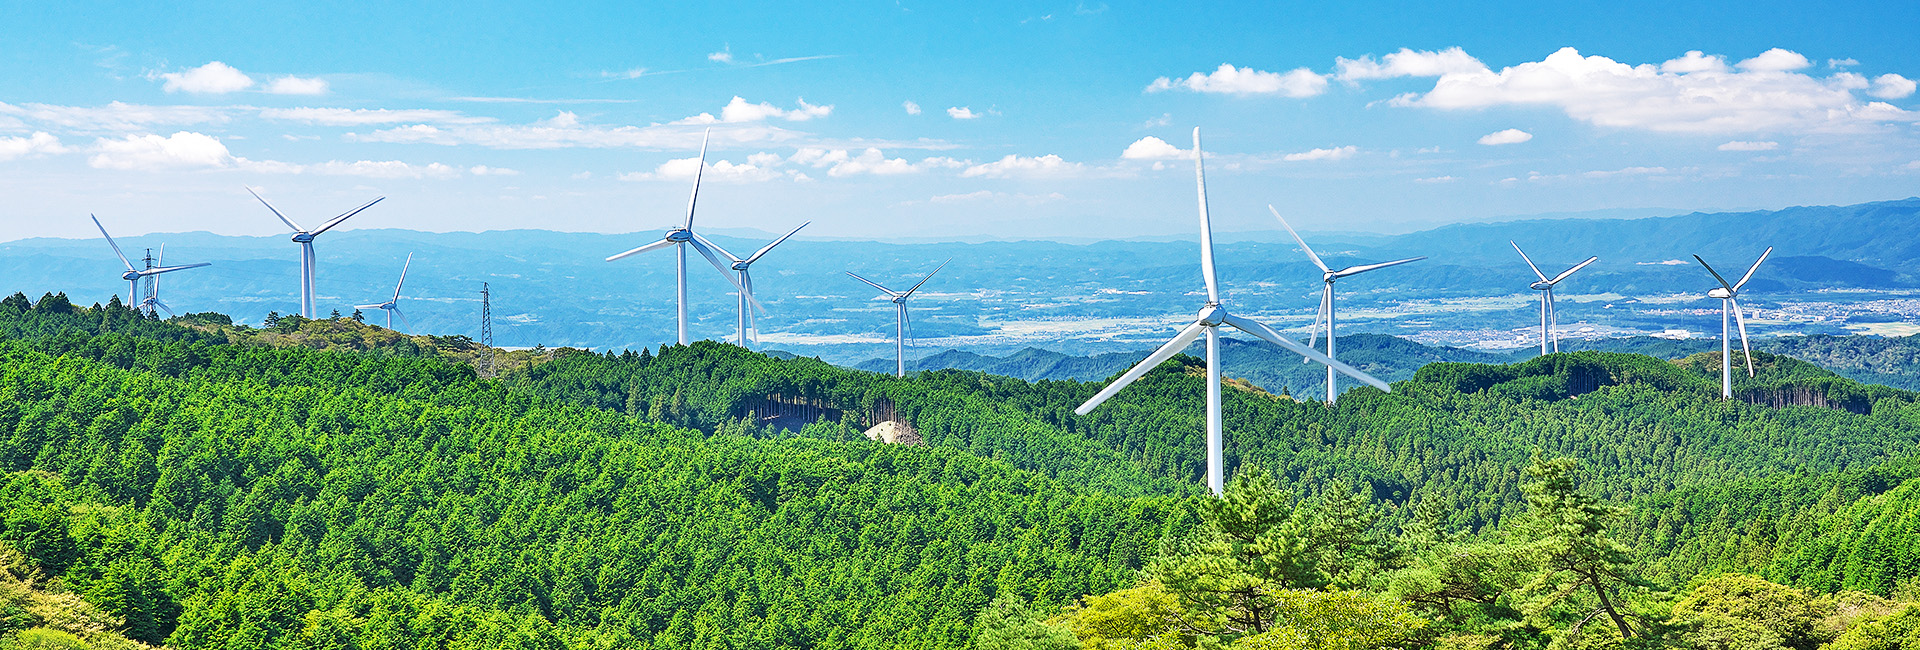 山間部に立つ風車。アチハの風力発電事業イメージ